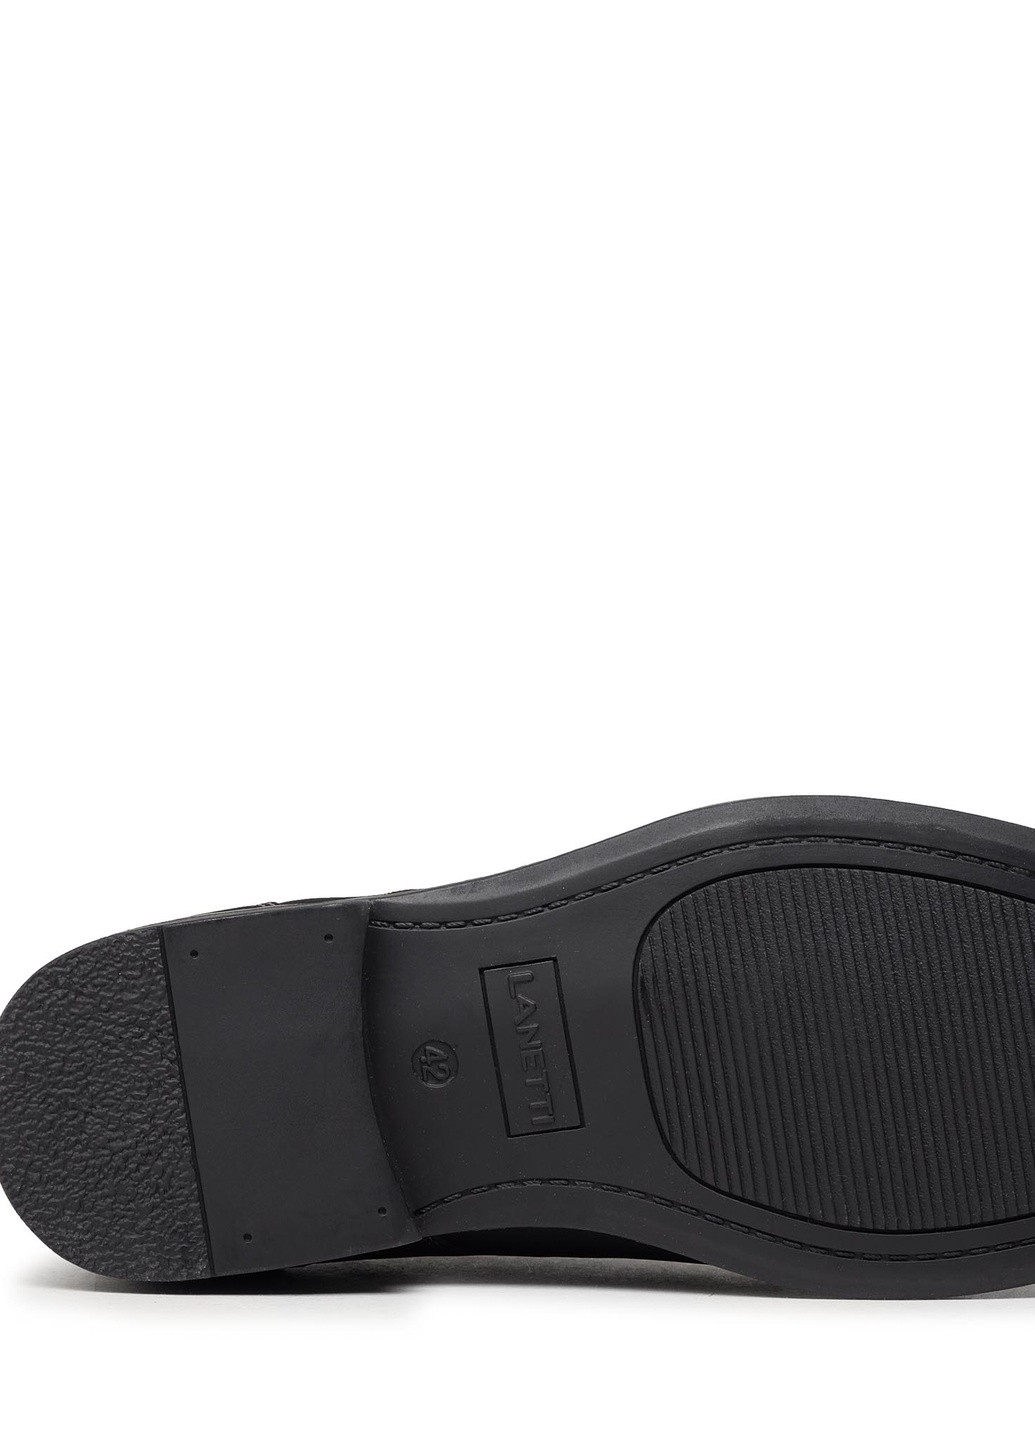 Черные осенние туфли m16aw070-27 Lanetti